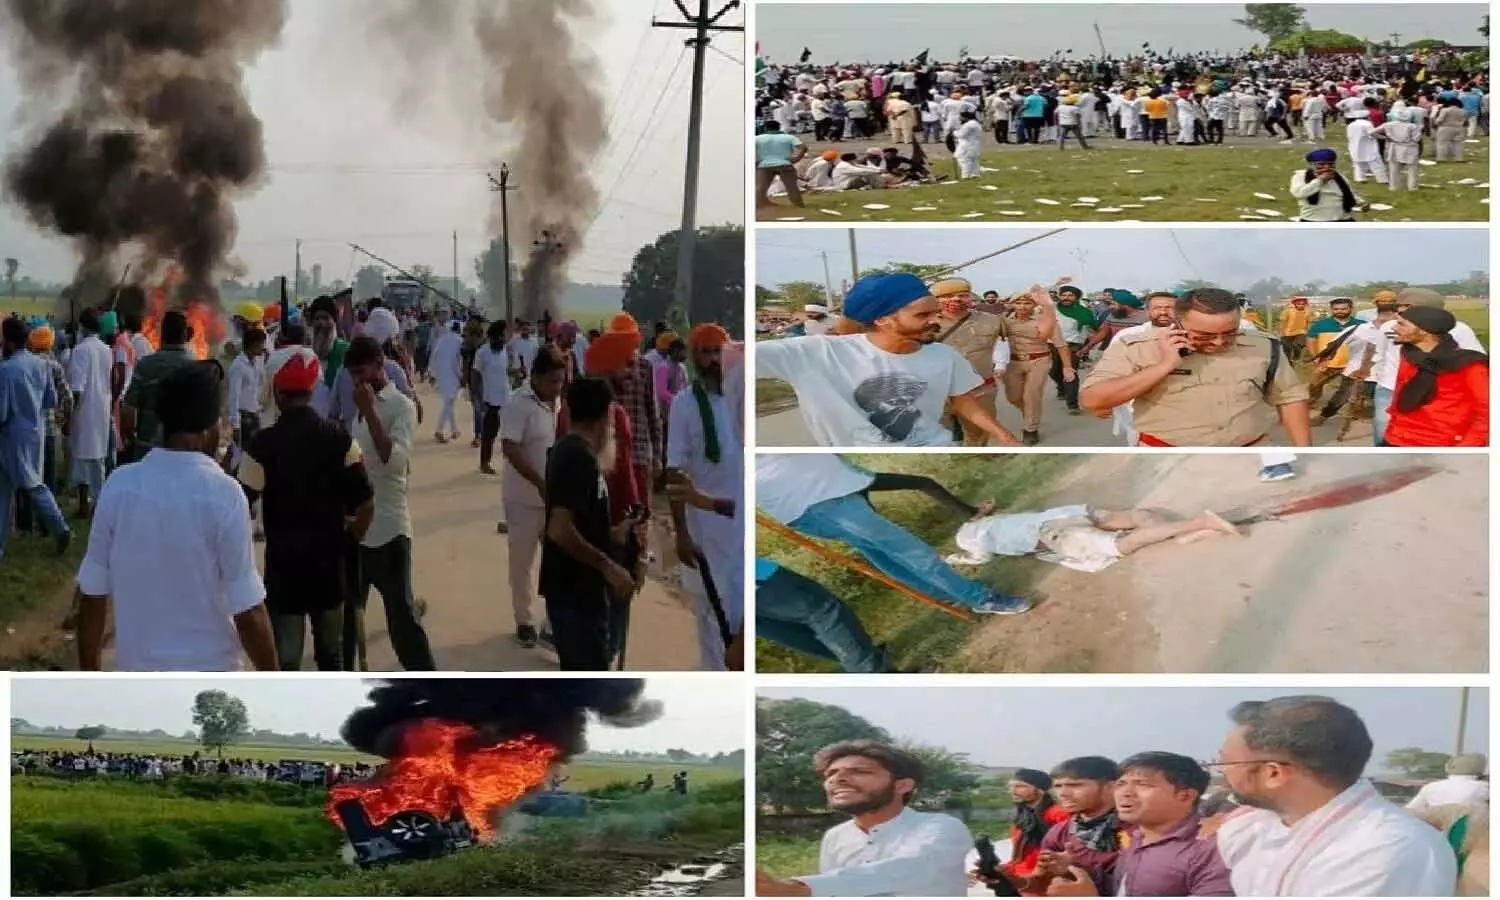 Lakhimpur Kheri Violence: रालोद नेता बोले- सरकार अघोषित आपातकाल जैसी स्थिति पैदा ना करें, परिणाम होंगे भारी